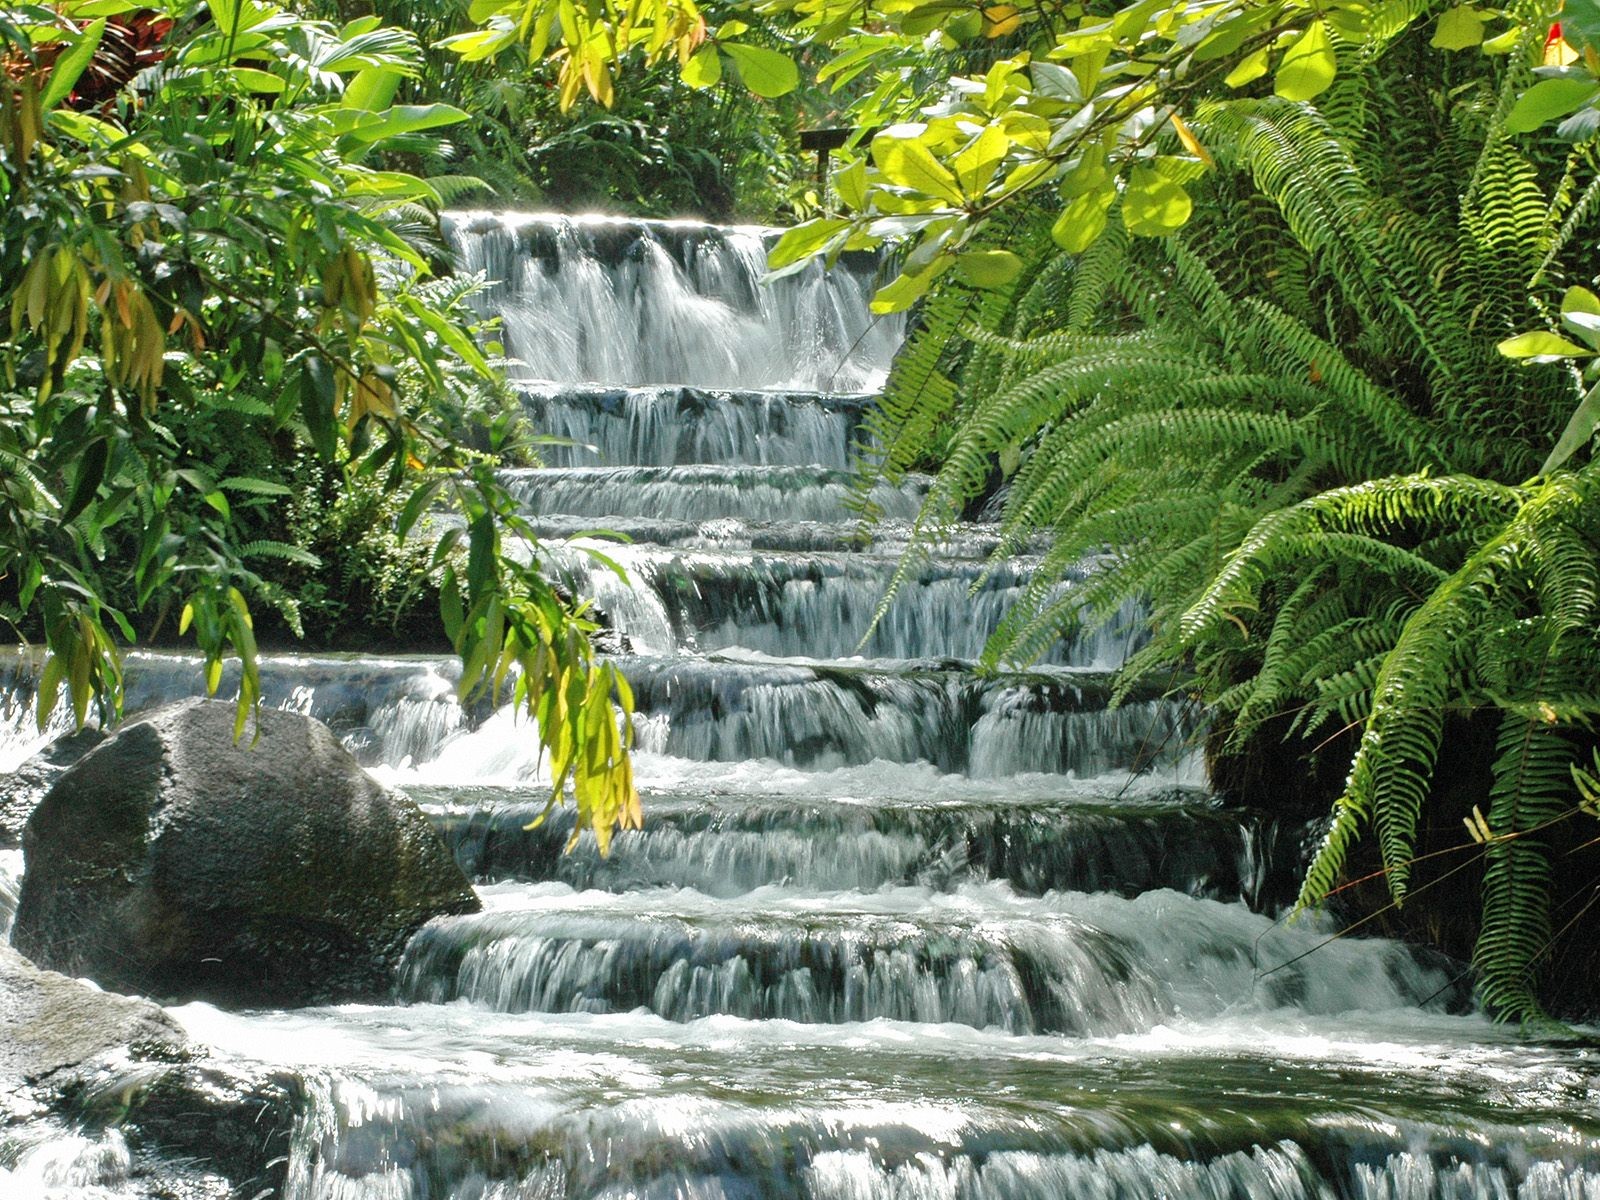 Cascad. Тип водопада Каскад. Флориш водопад Каскад. Водопады Карфигуэла. Коста Рика водопады.